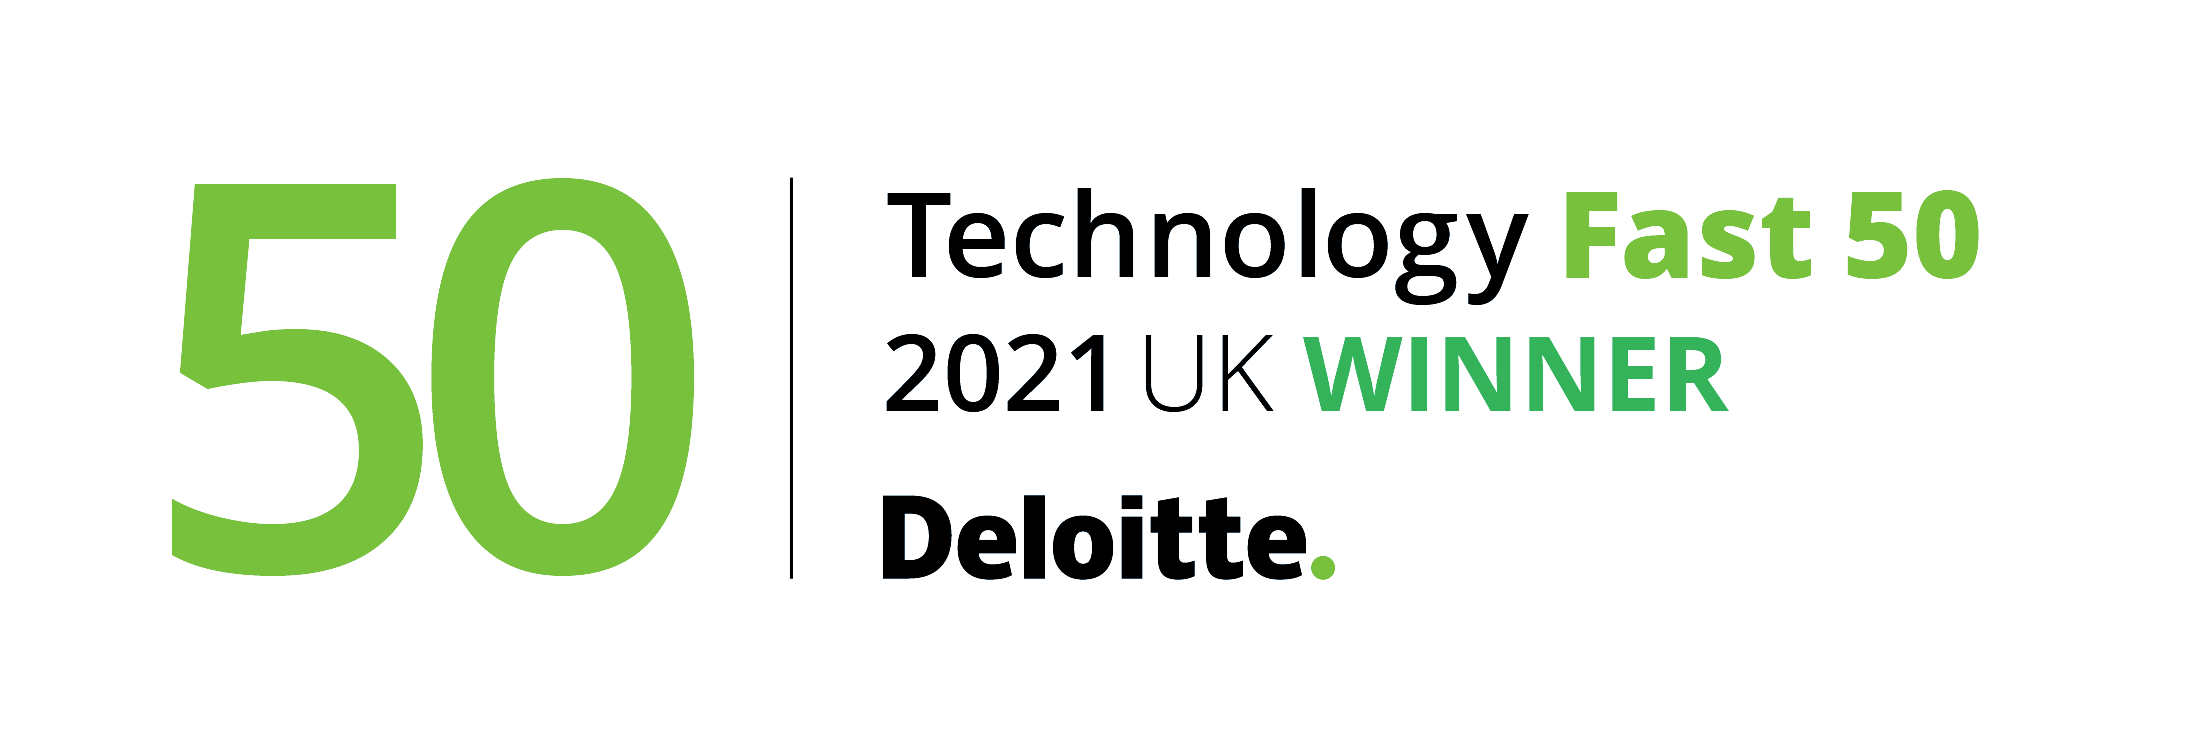 Fast 50 2021 winners logo